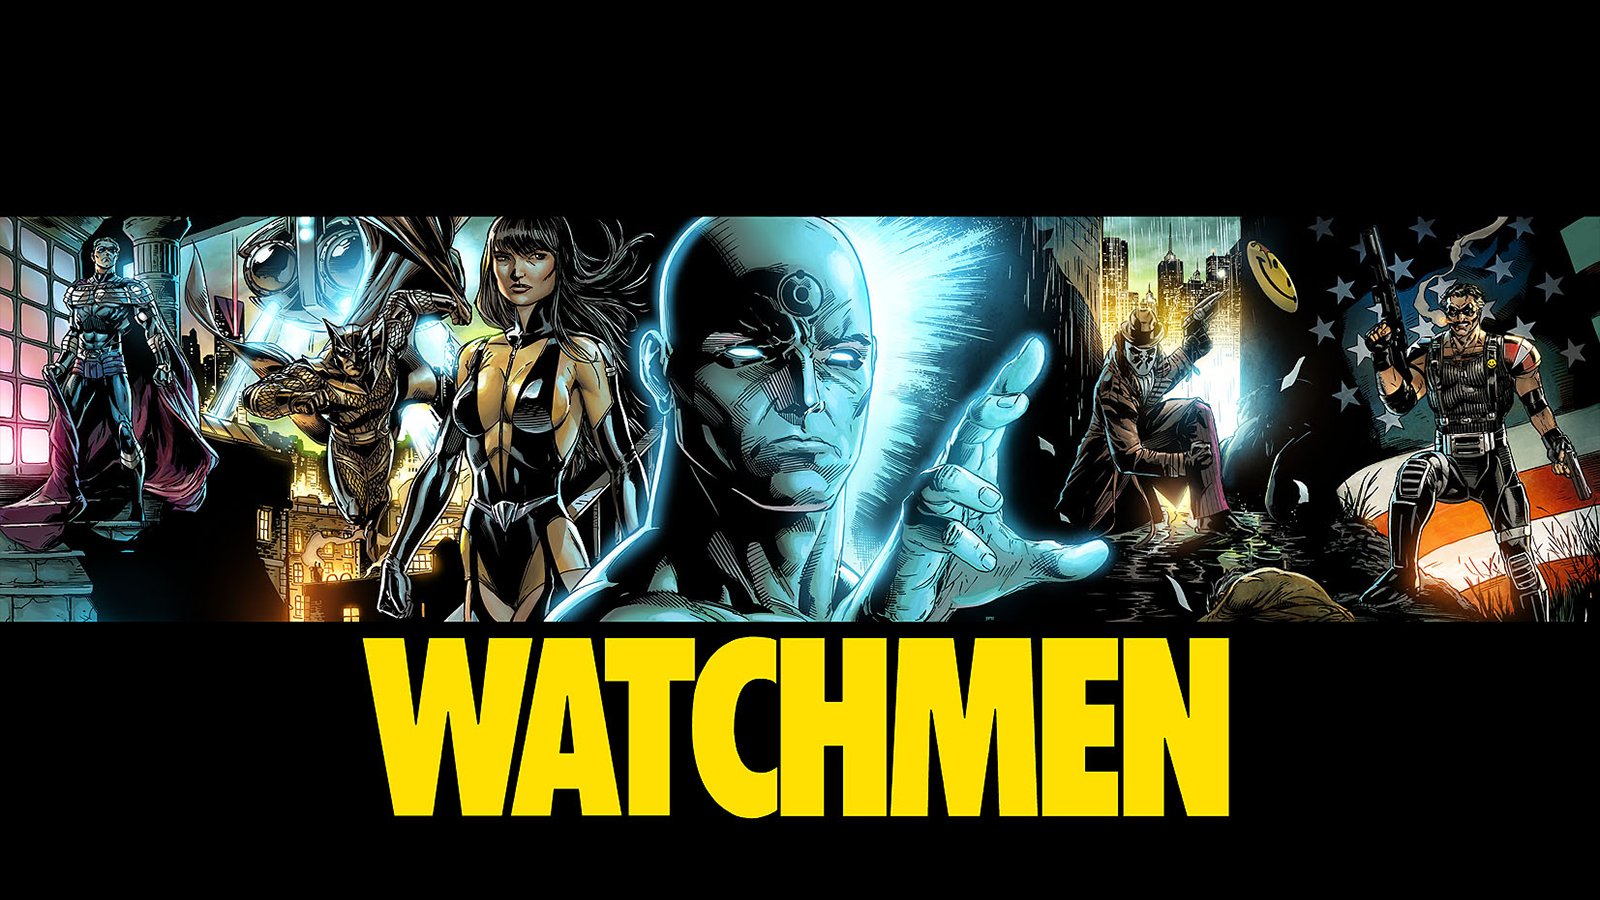 watchmen wallpaper hd,gioco di avventura e azione,film,manifesto,personaggio fittizio,giochi